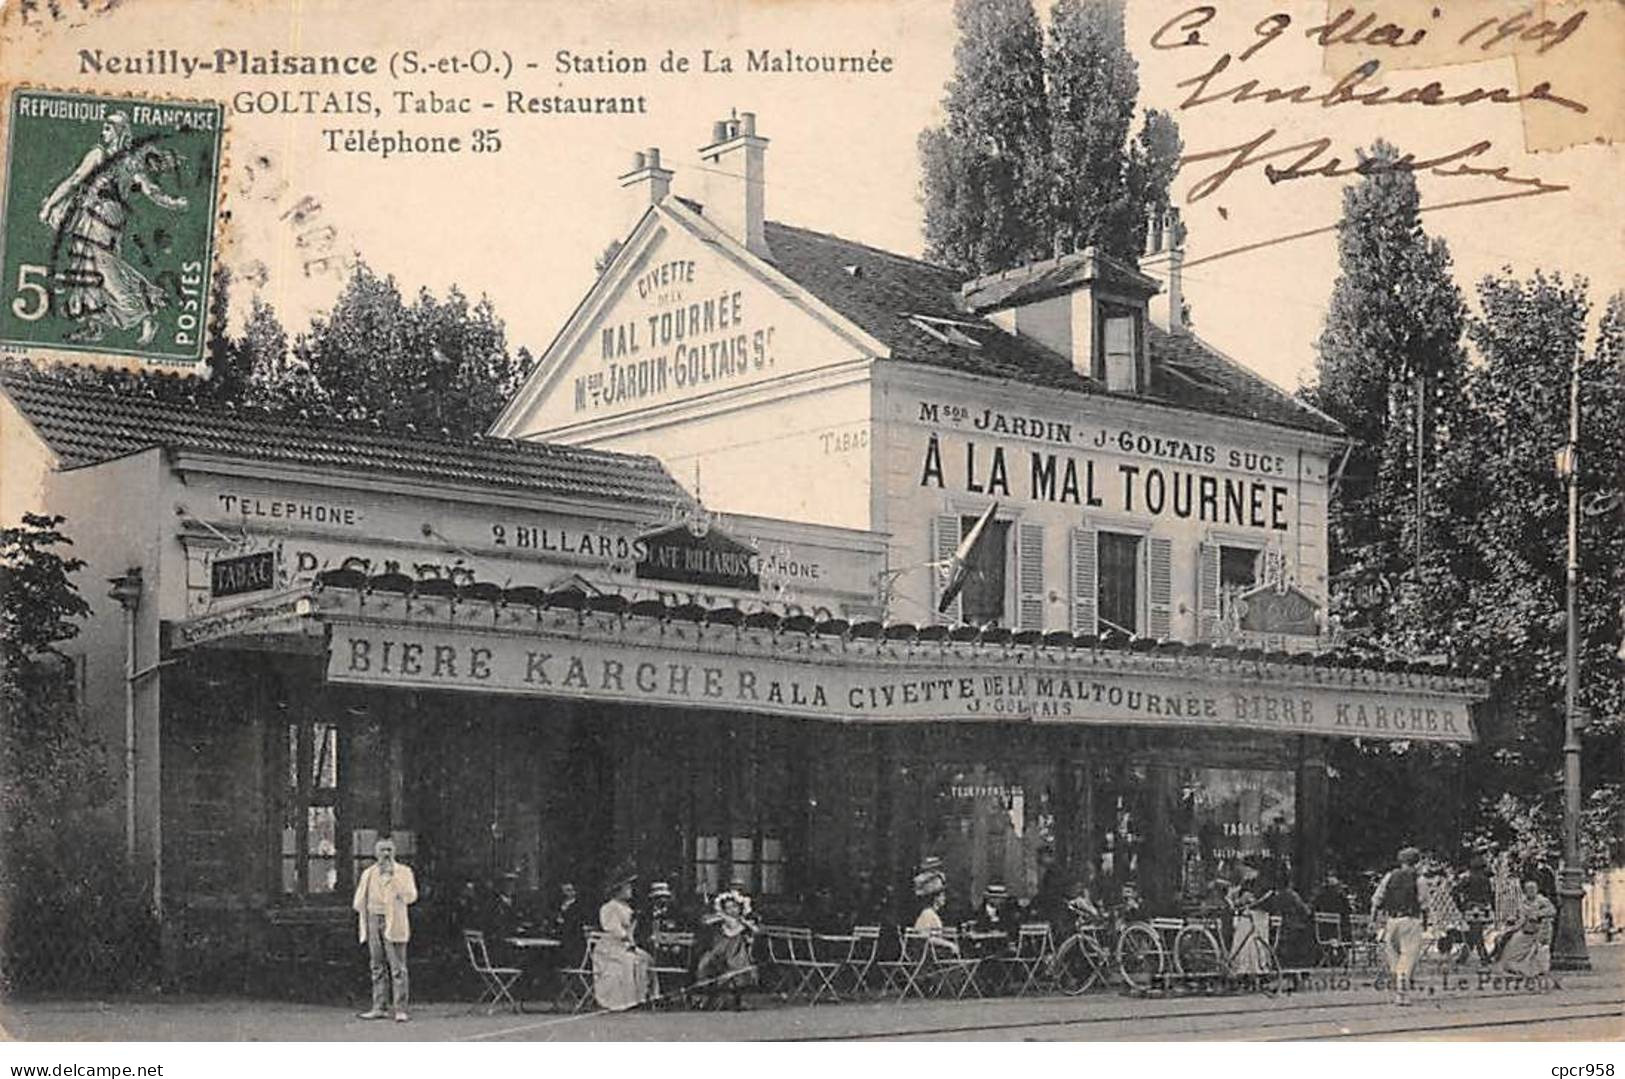 93 - NEUILLY PLAISANCE - SAN26105 - Station De La Maltournée - GOLTAIS- Tabac - Restaurant - Neuilly Plaisance